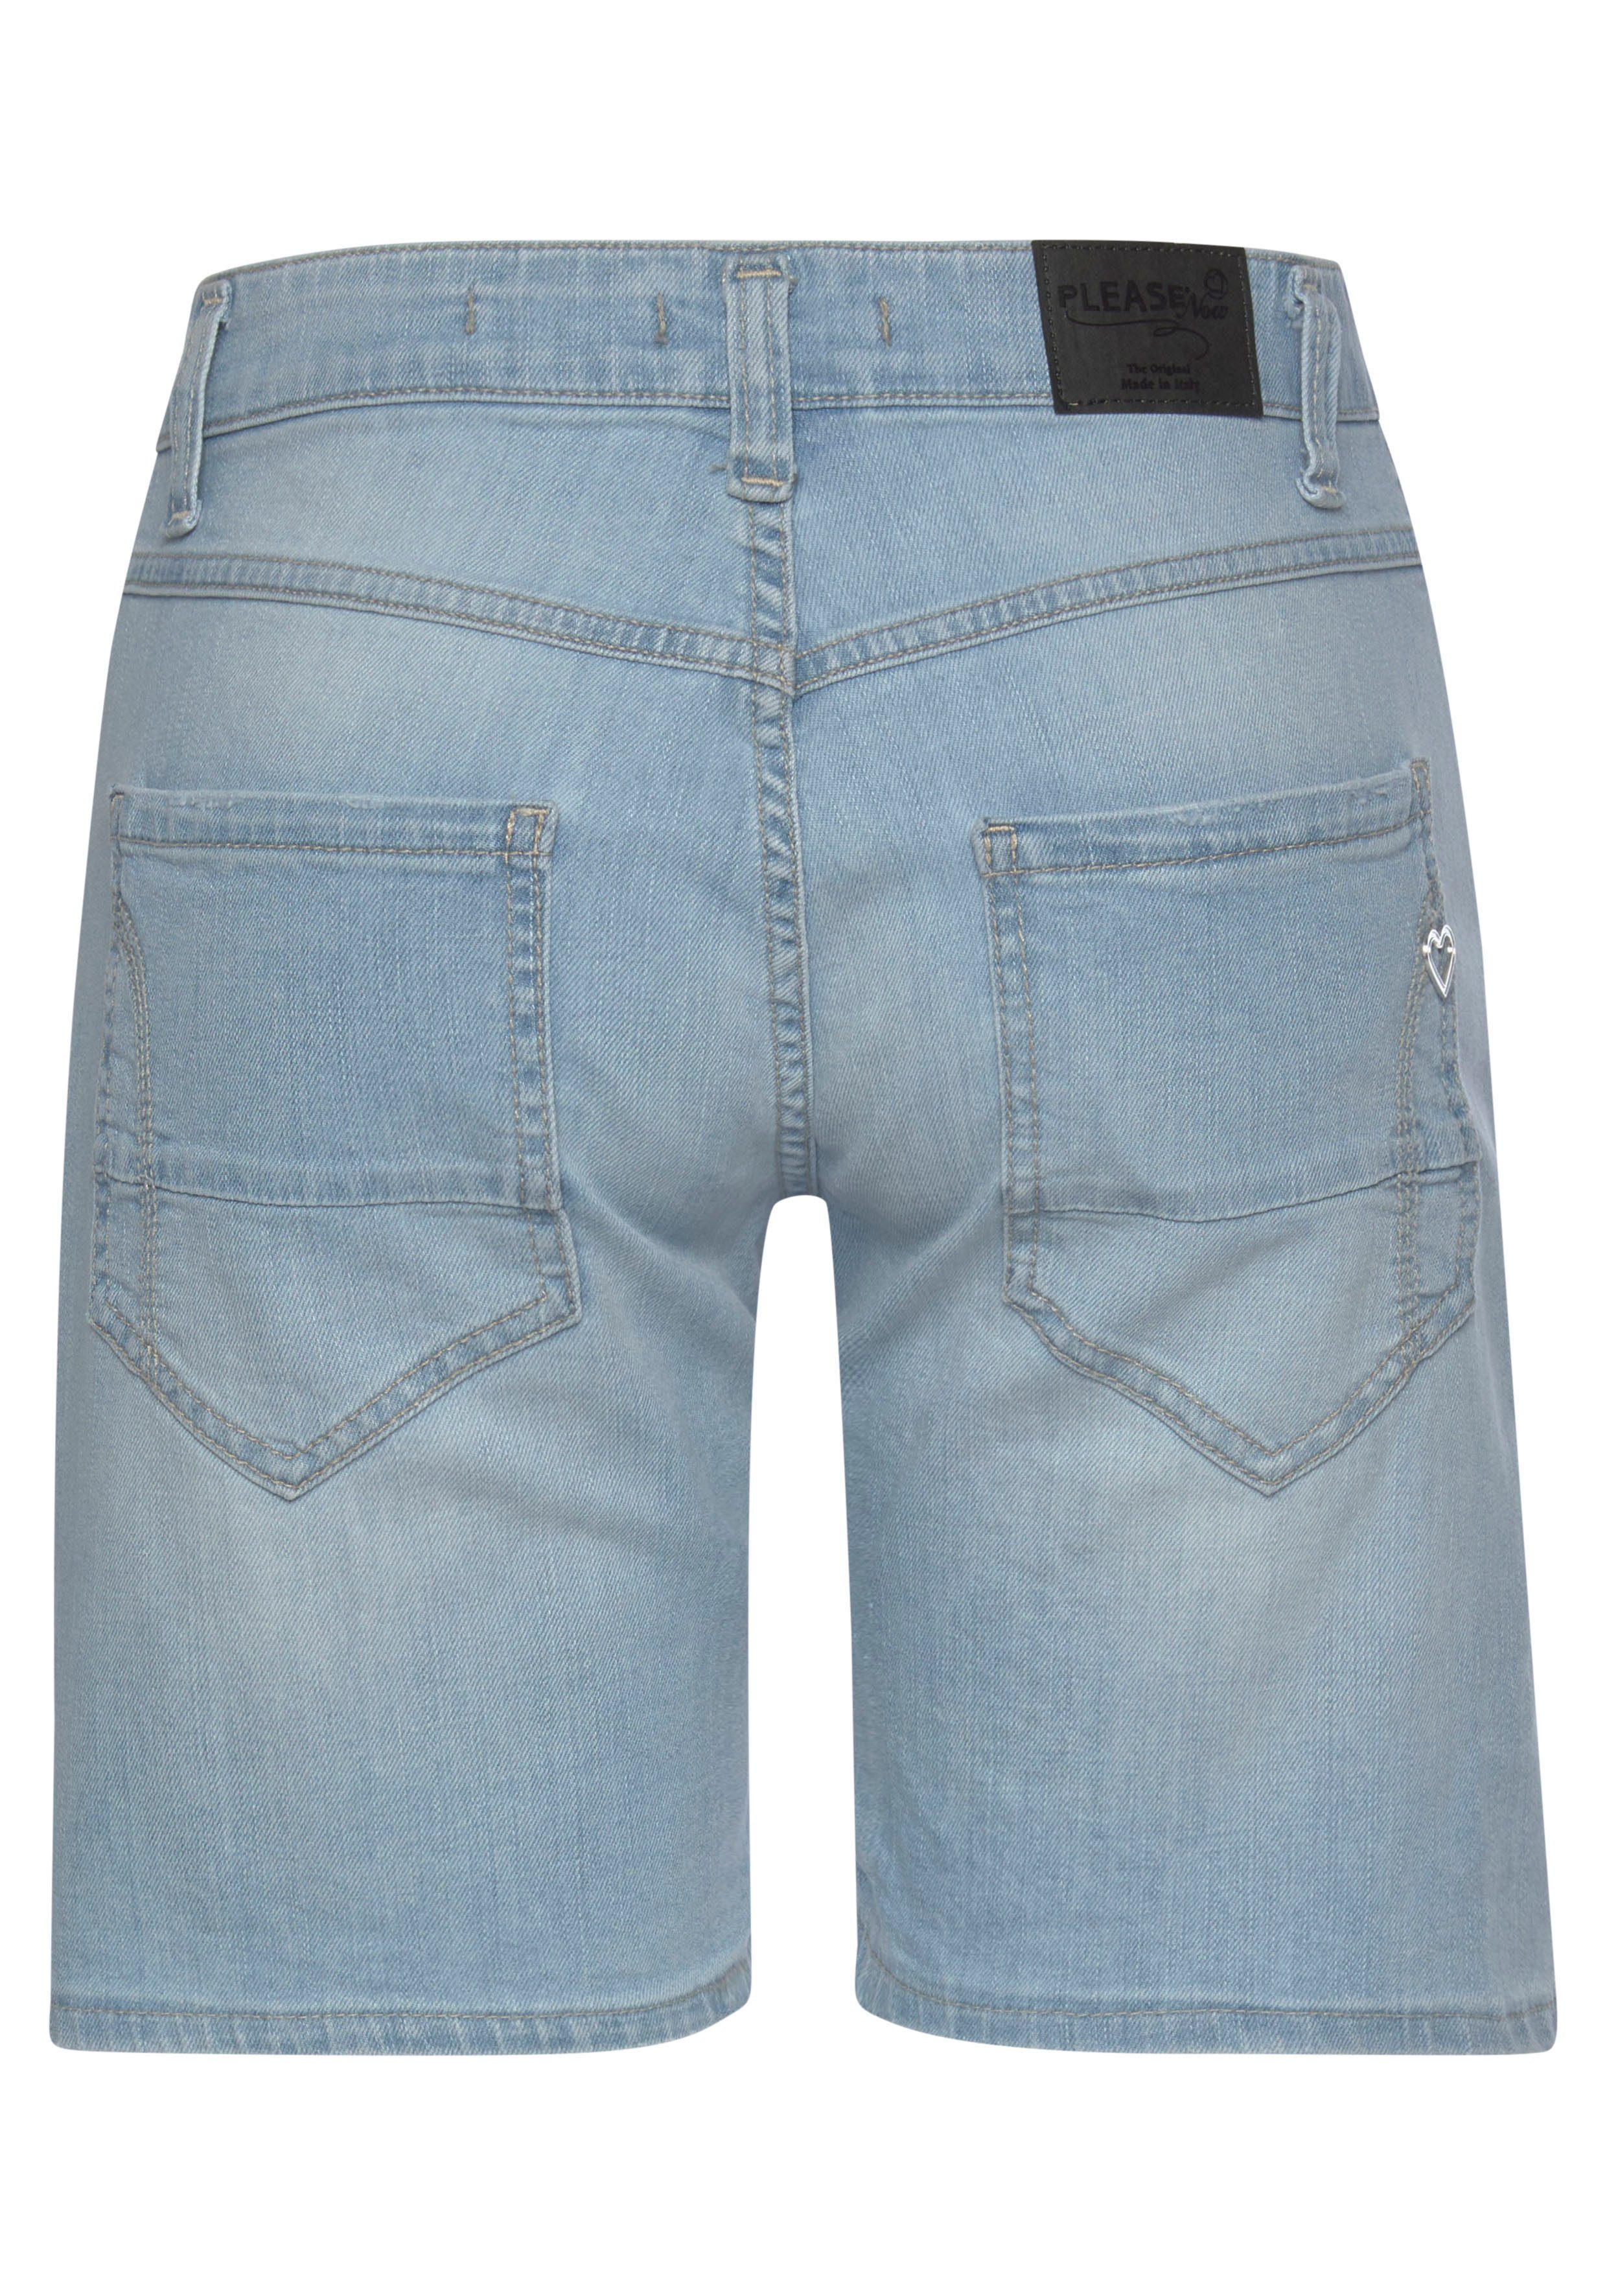 Damen Hosen Please Jeans Jeansbermudas P88A mit sichtbarer Button-Fly Leiste vorn